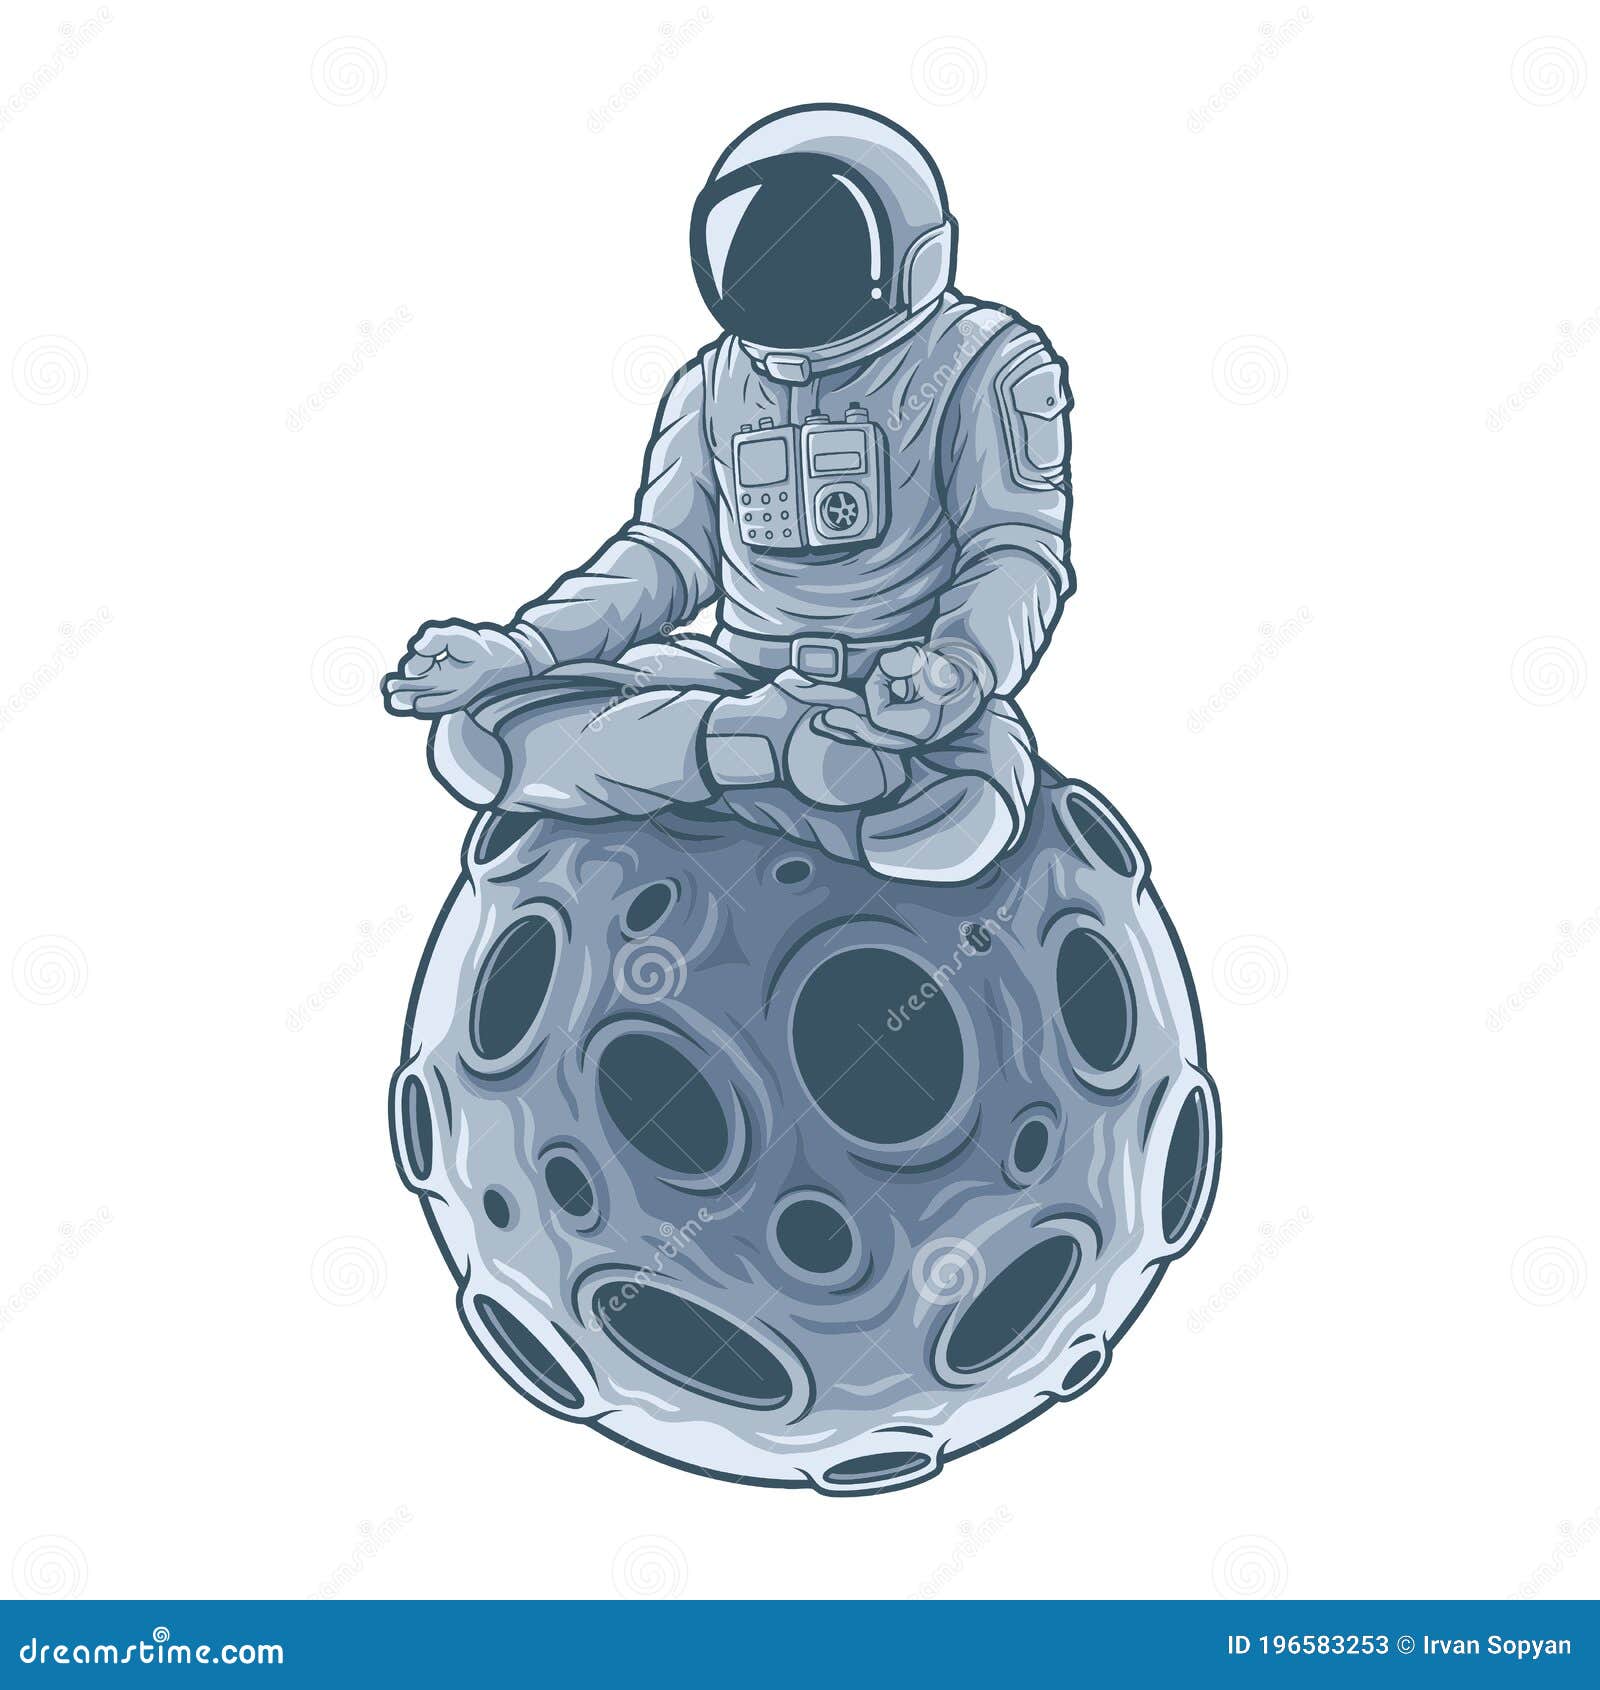 Astronaut sitting on the moon Space illustration  Stock Illustration  55169460  PIXTA